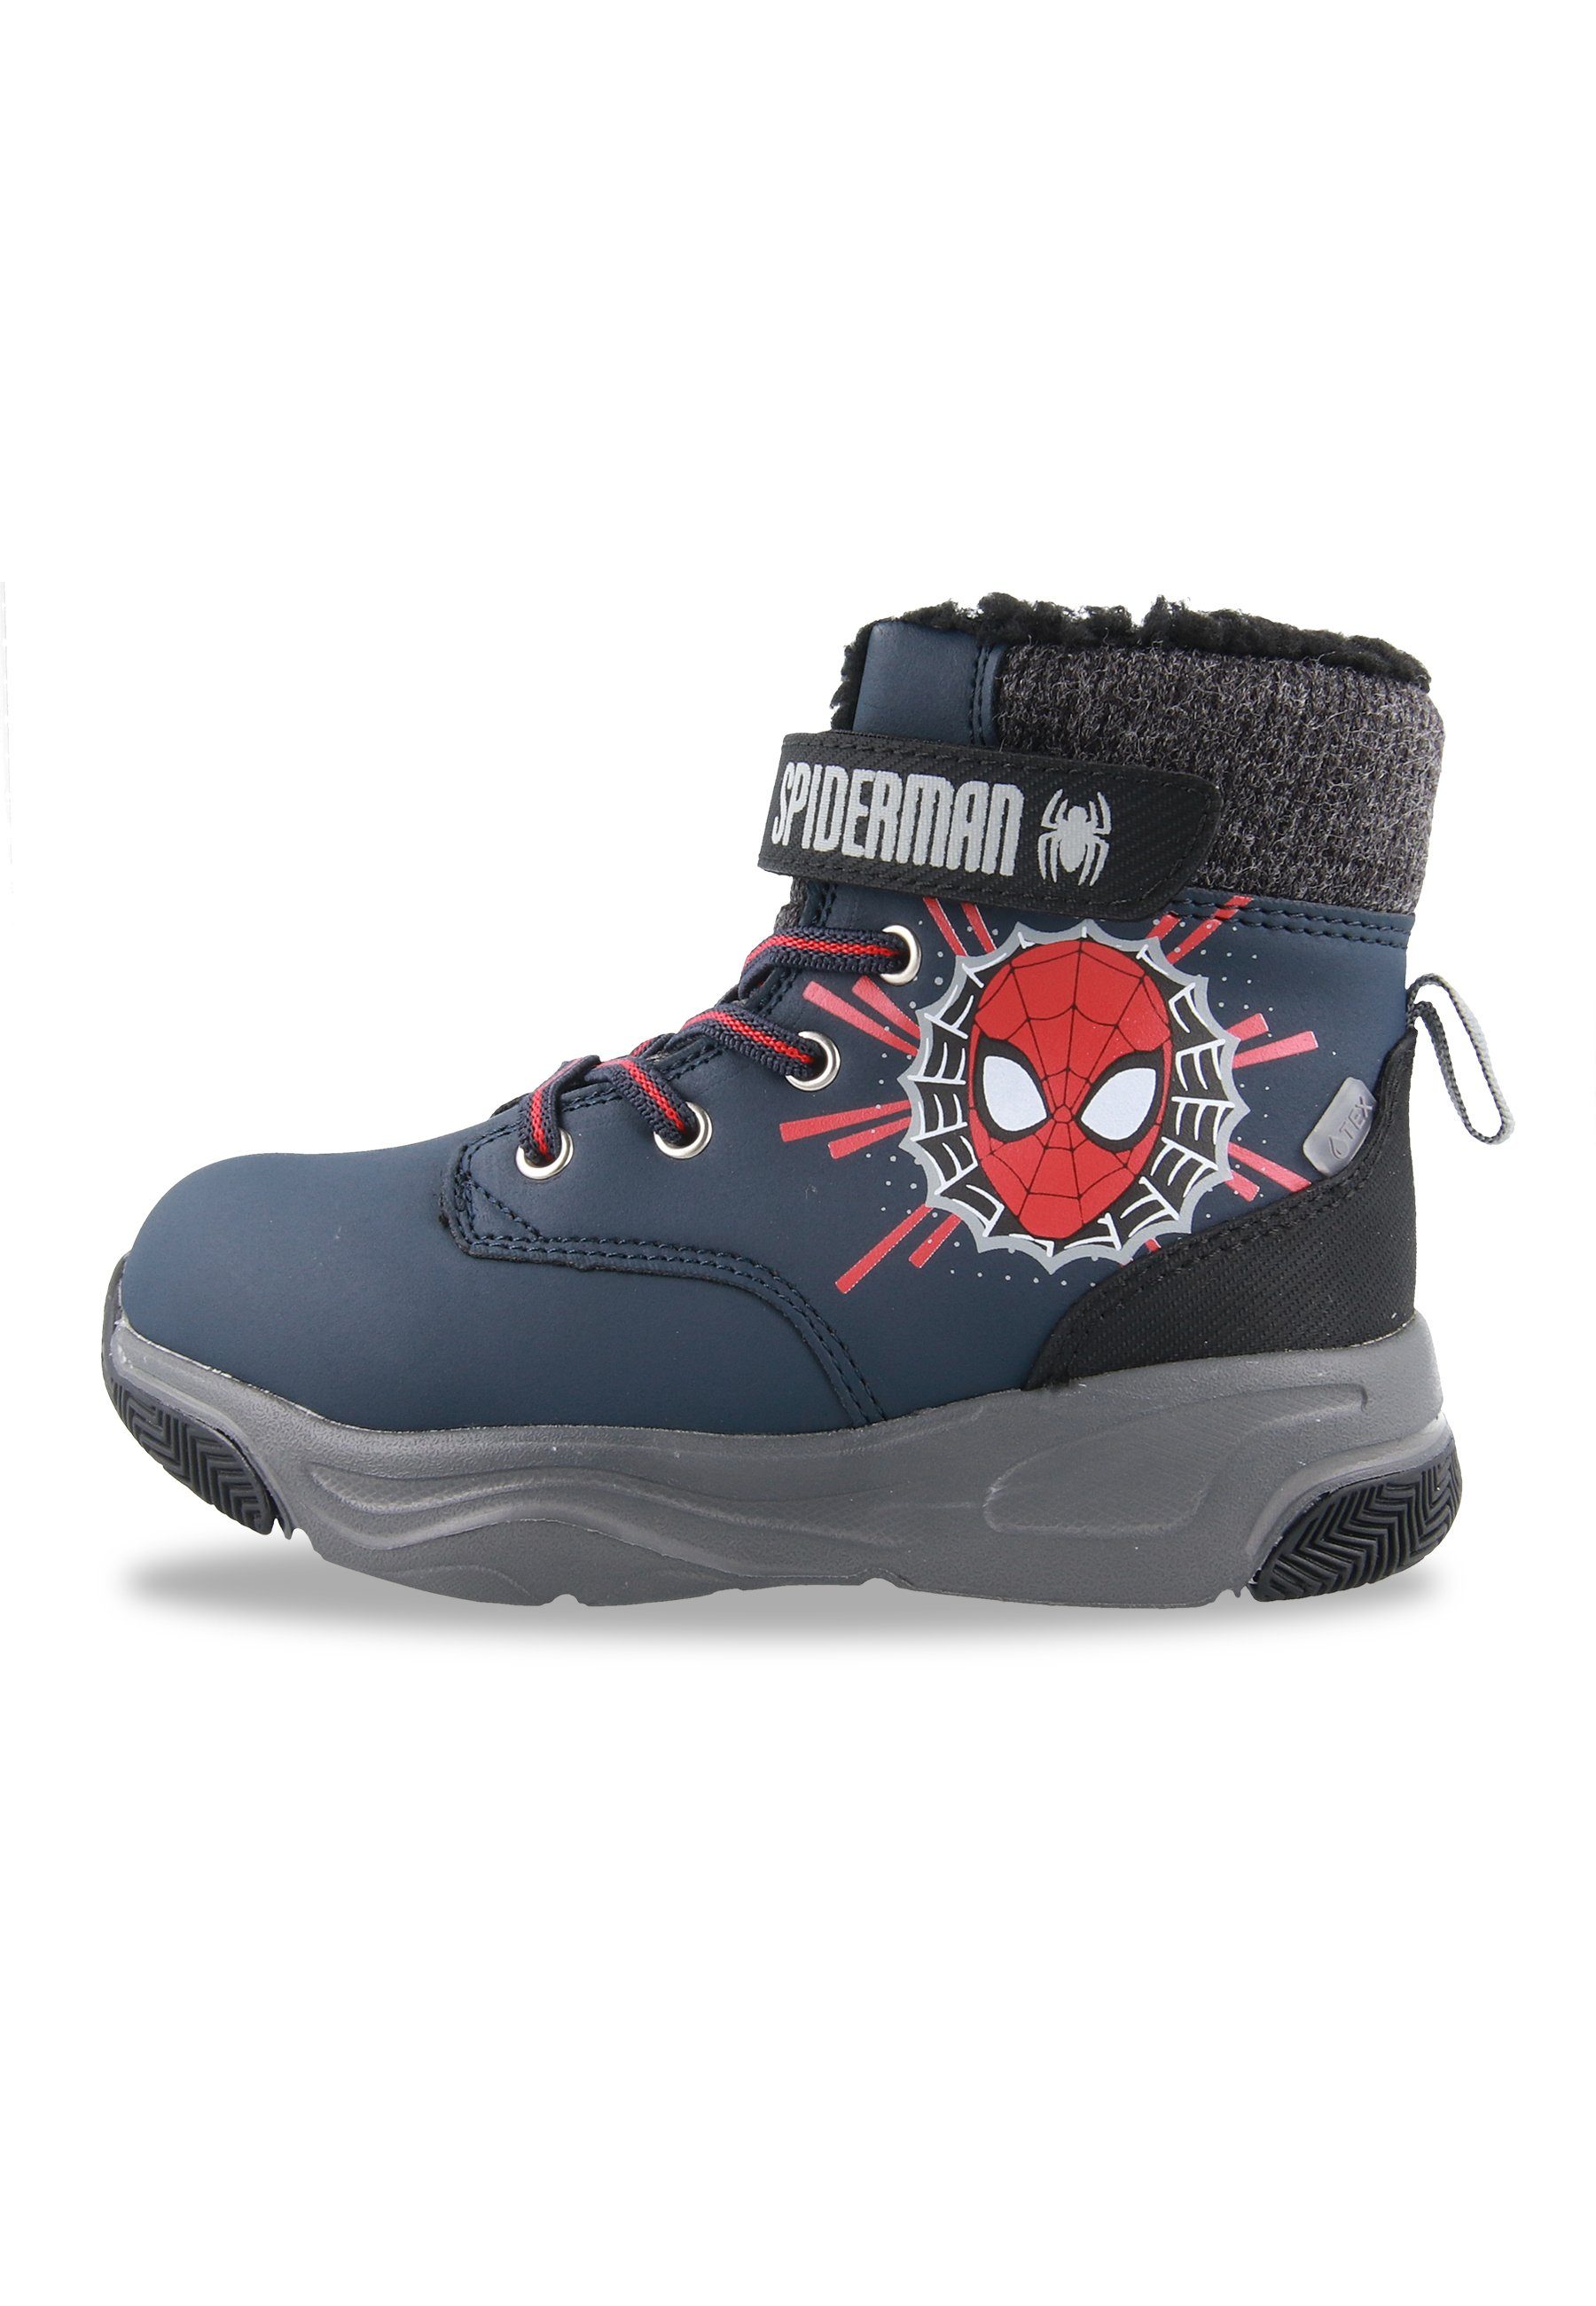 Kids2Go Spiderman - READY FOR ACTION - Winterboots - Dark Navy Stiefel Mit Klettverschluss und elastischen Schnürsenkeln. Charakterprint.